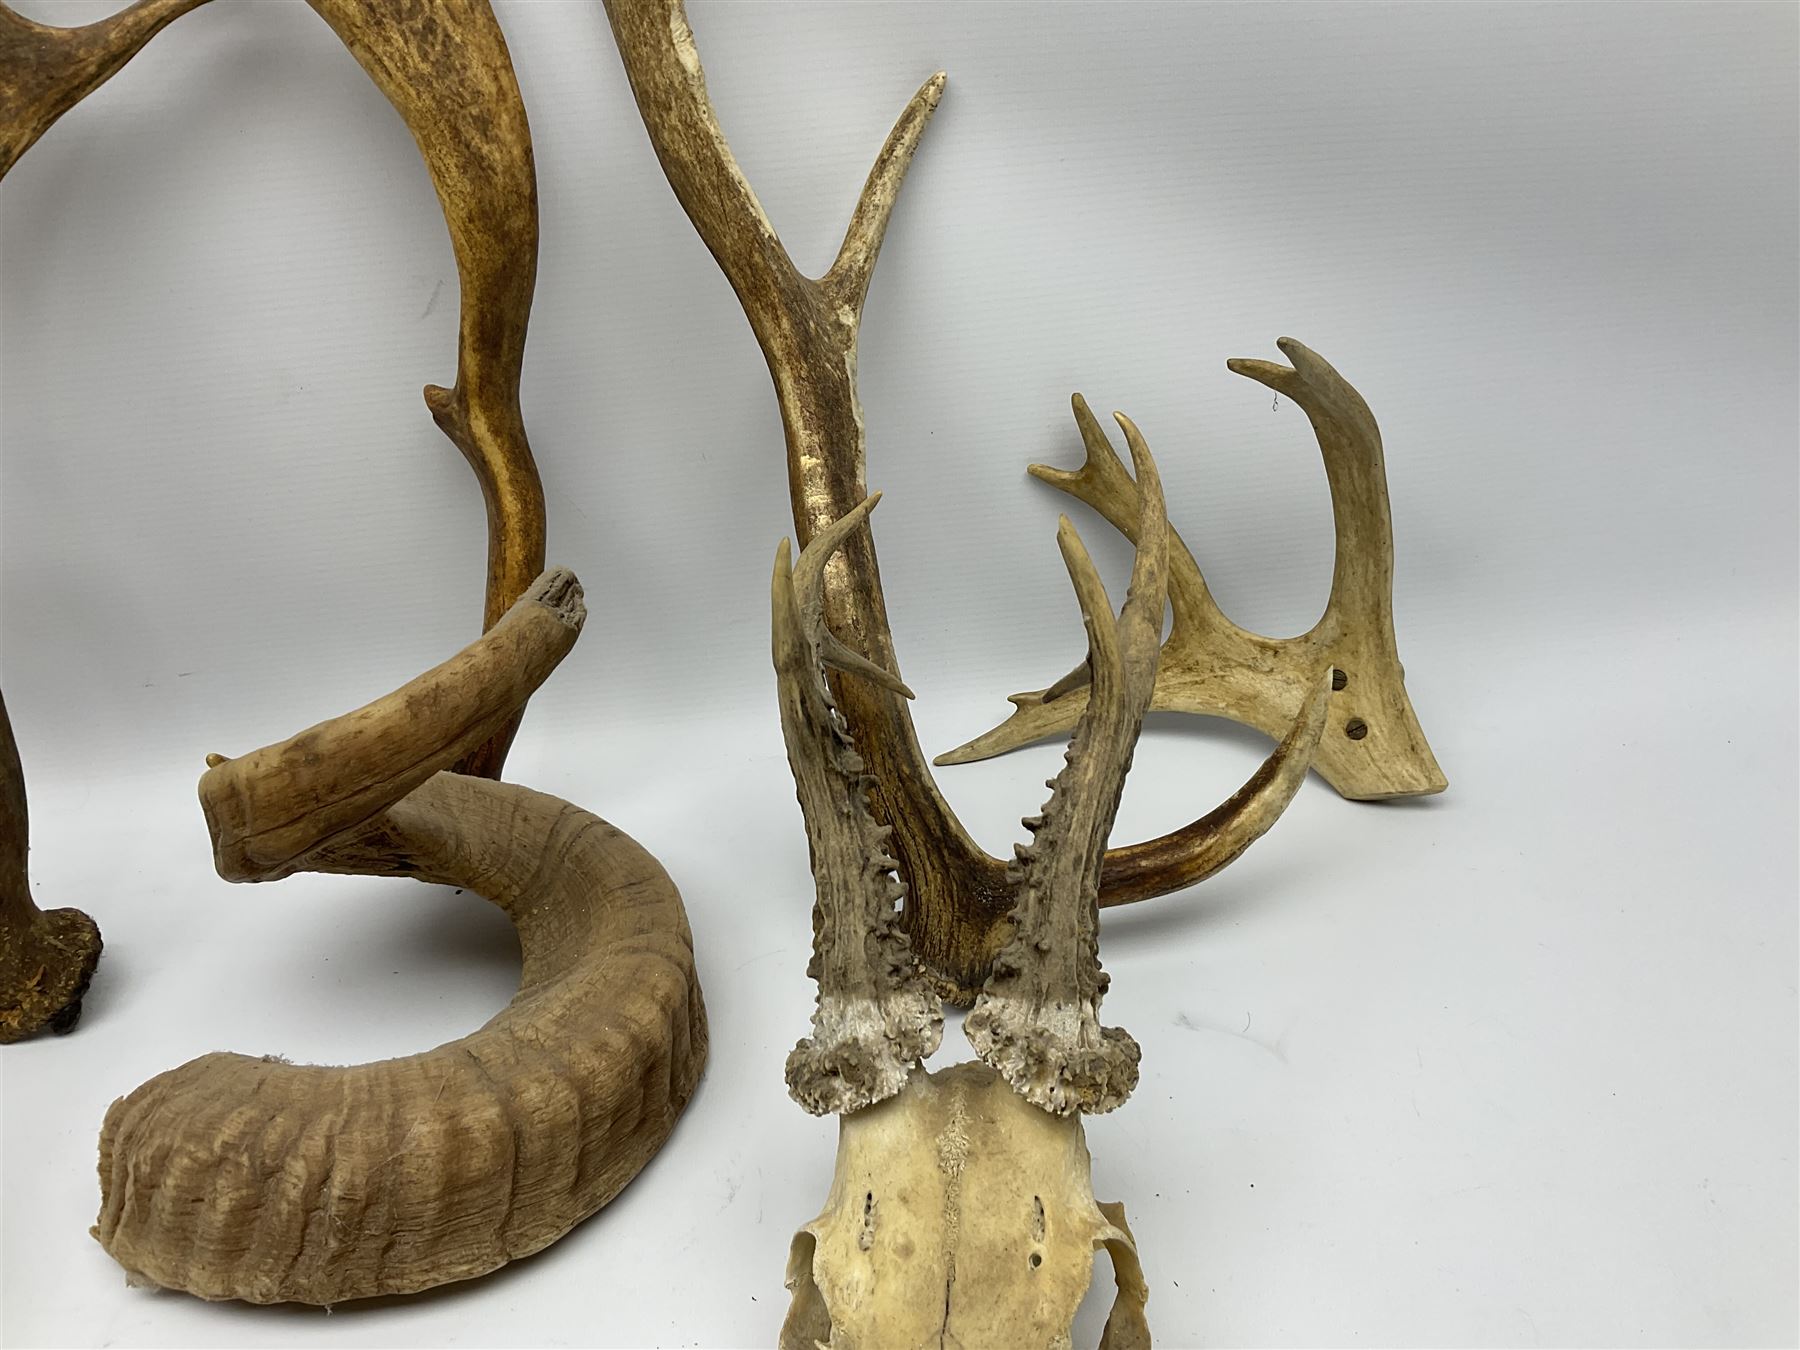 Antlers/Horns: two Roebuck Antlers with skull (Capreolus capreolus) - Image 9 of 10